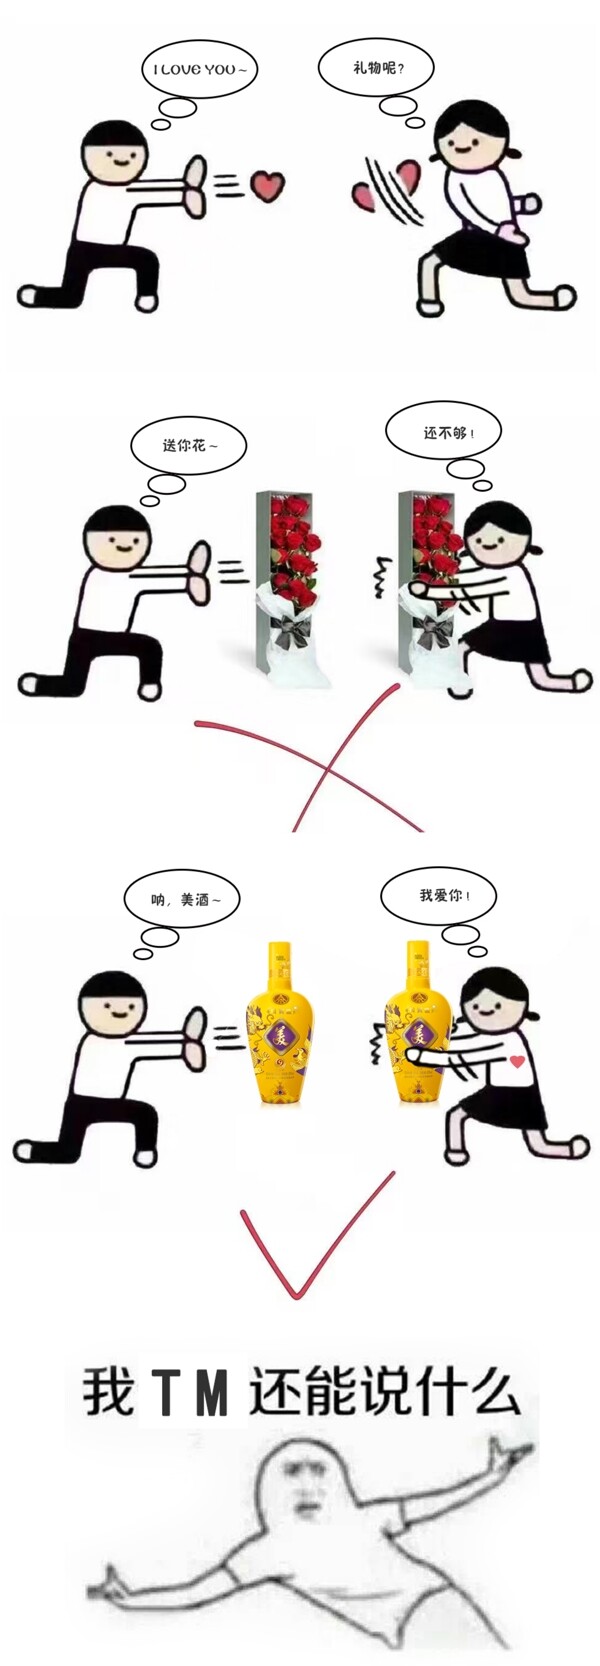 美酒产品宣传搞笑漫画人物斗图版